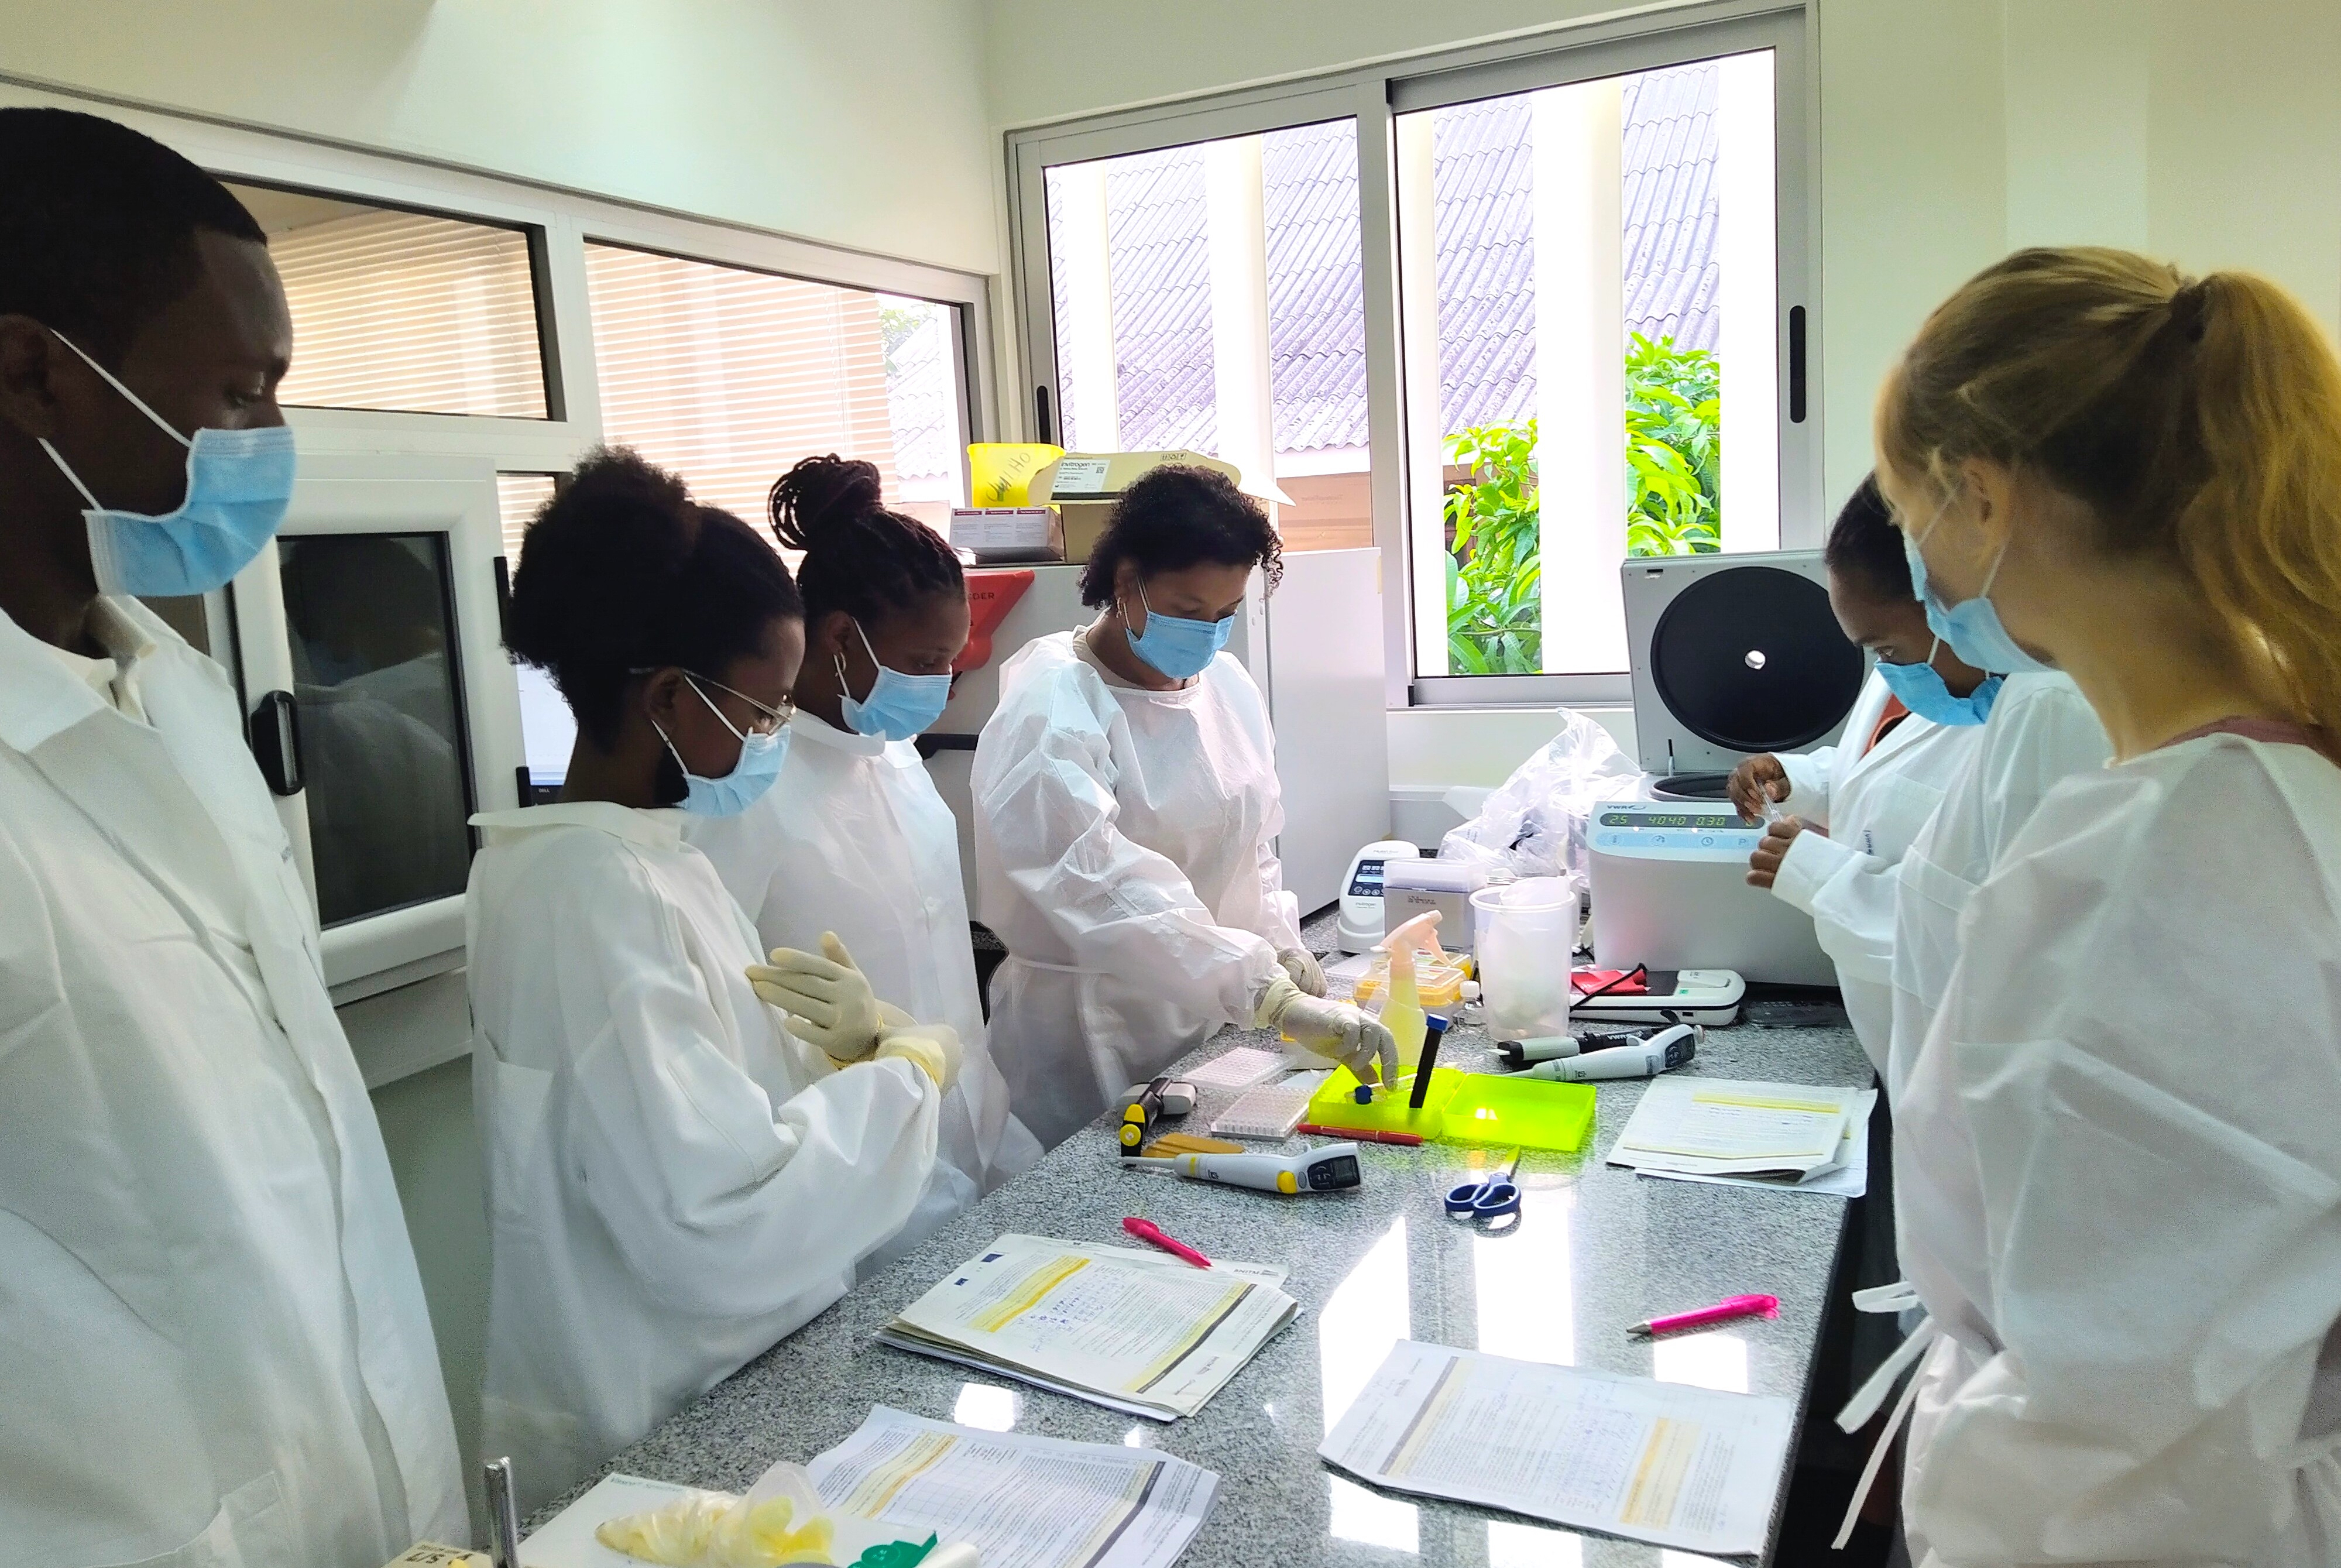 Next-generation sequencing training in São Tomé and Príncipe